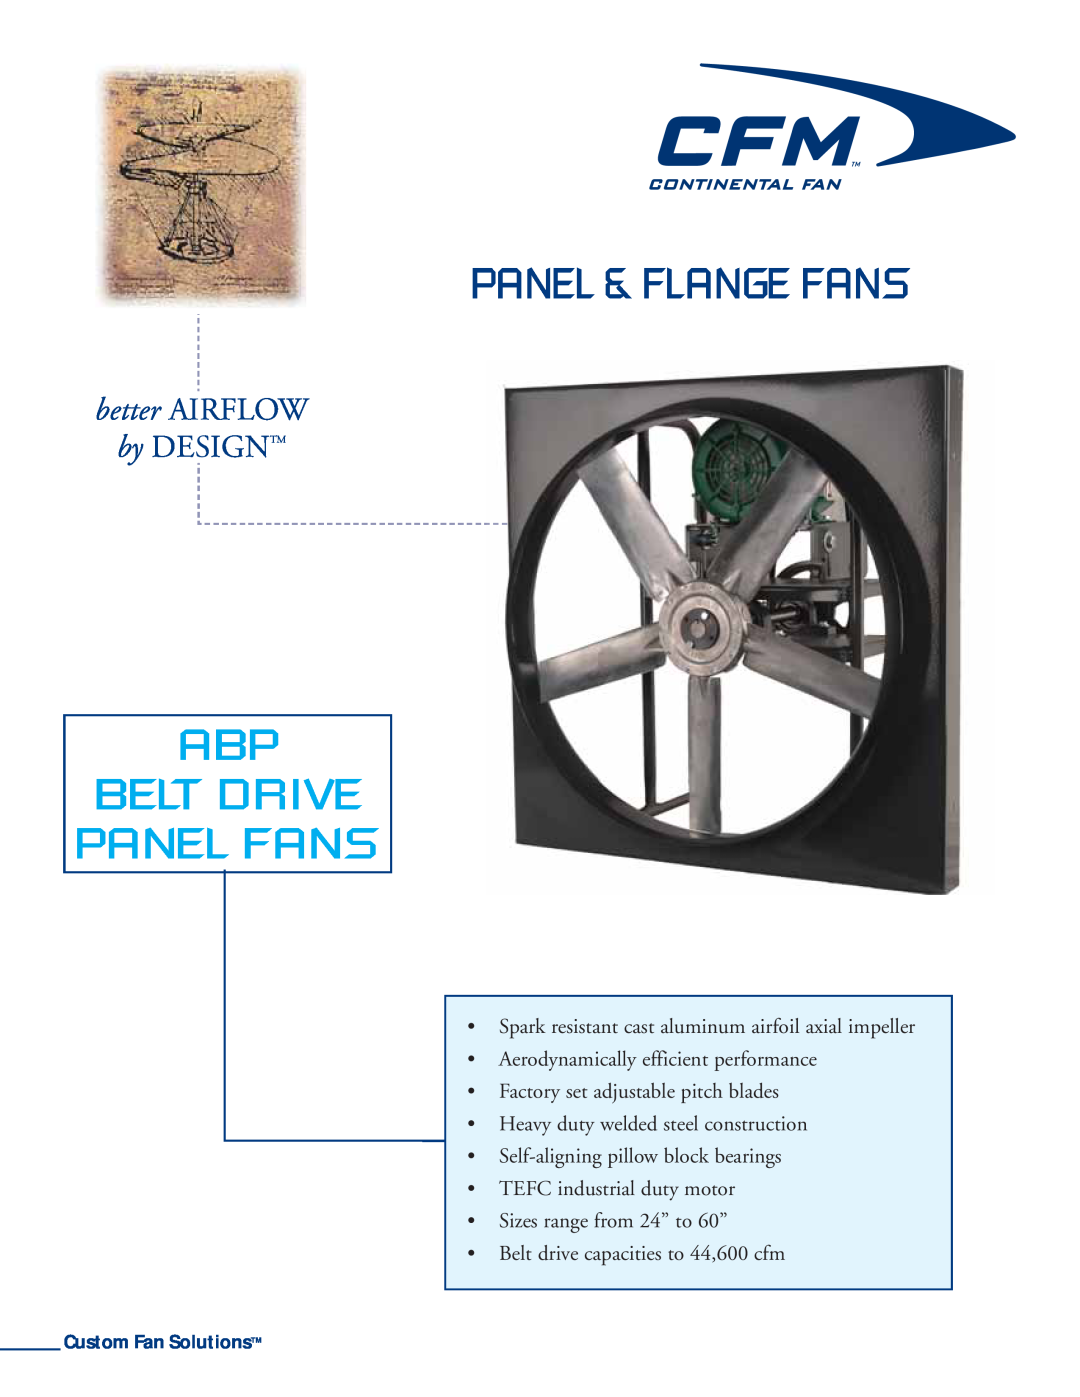 CFM ABP-48 manual Abp Belt Drive Panel Fans, Panel & Flange Fans, better AIRFLOW, by DESIGNTM, Custom Fan SolutionsTM 